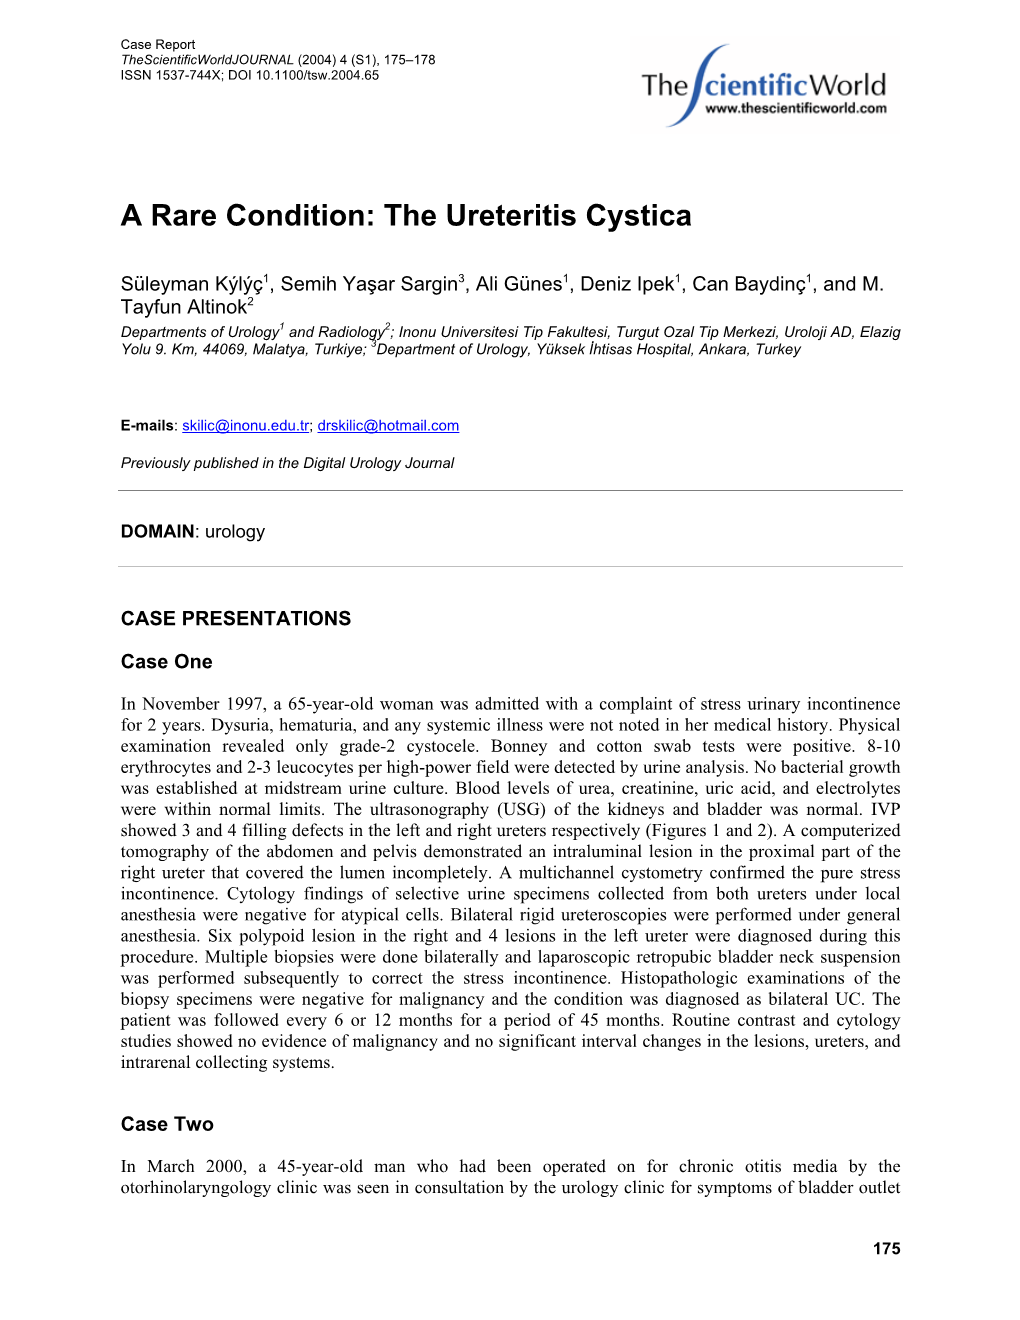 The Ureteritis Cystica